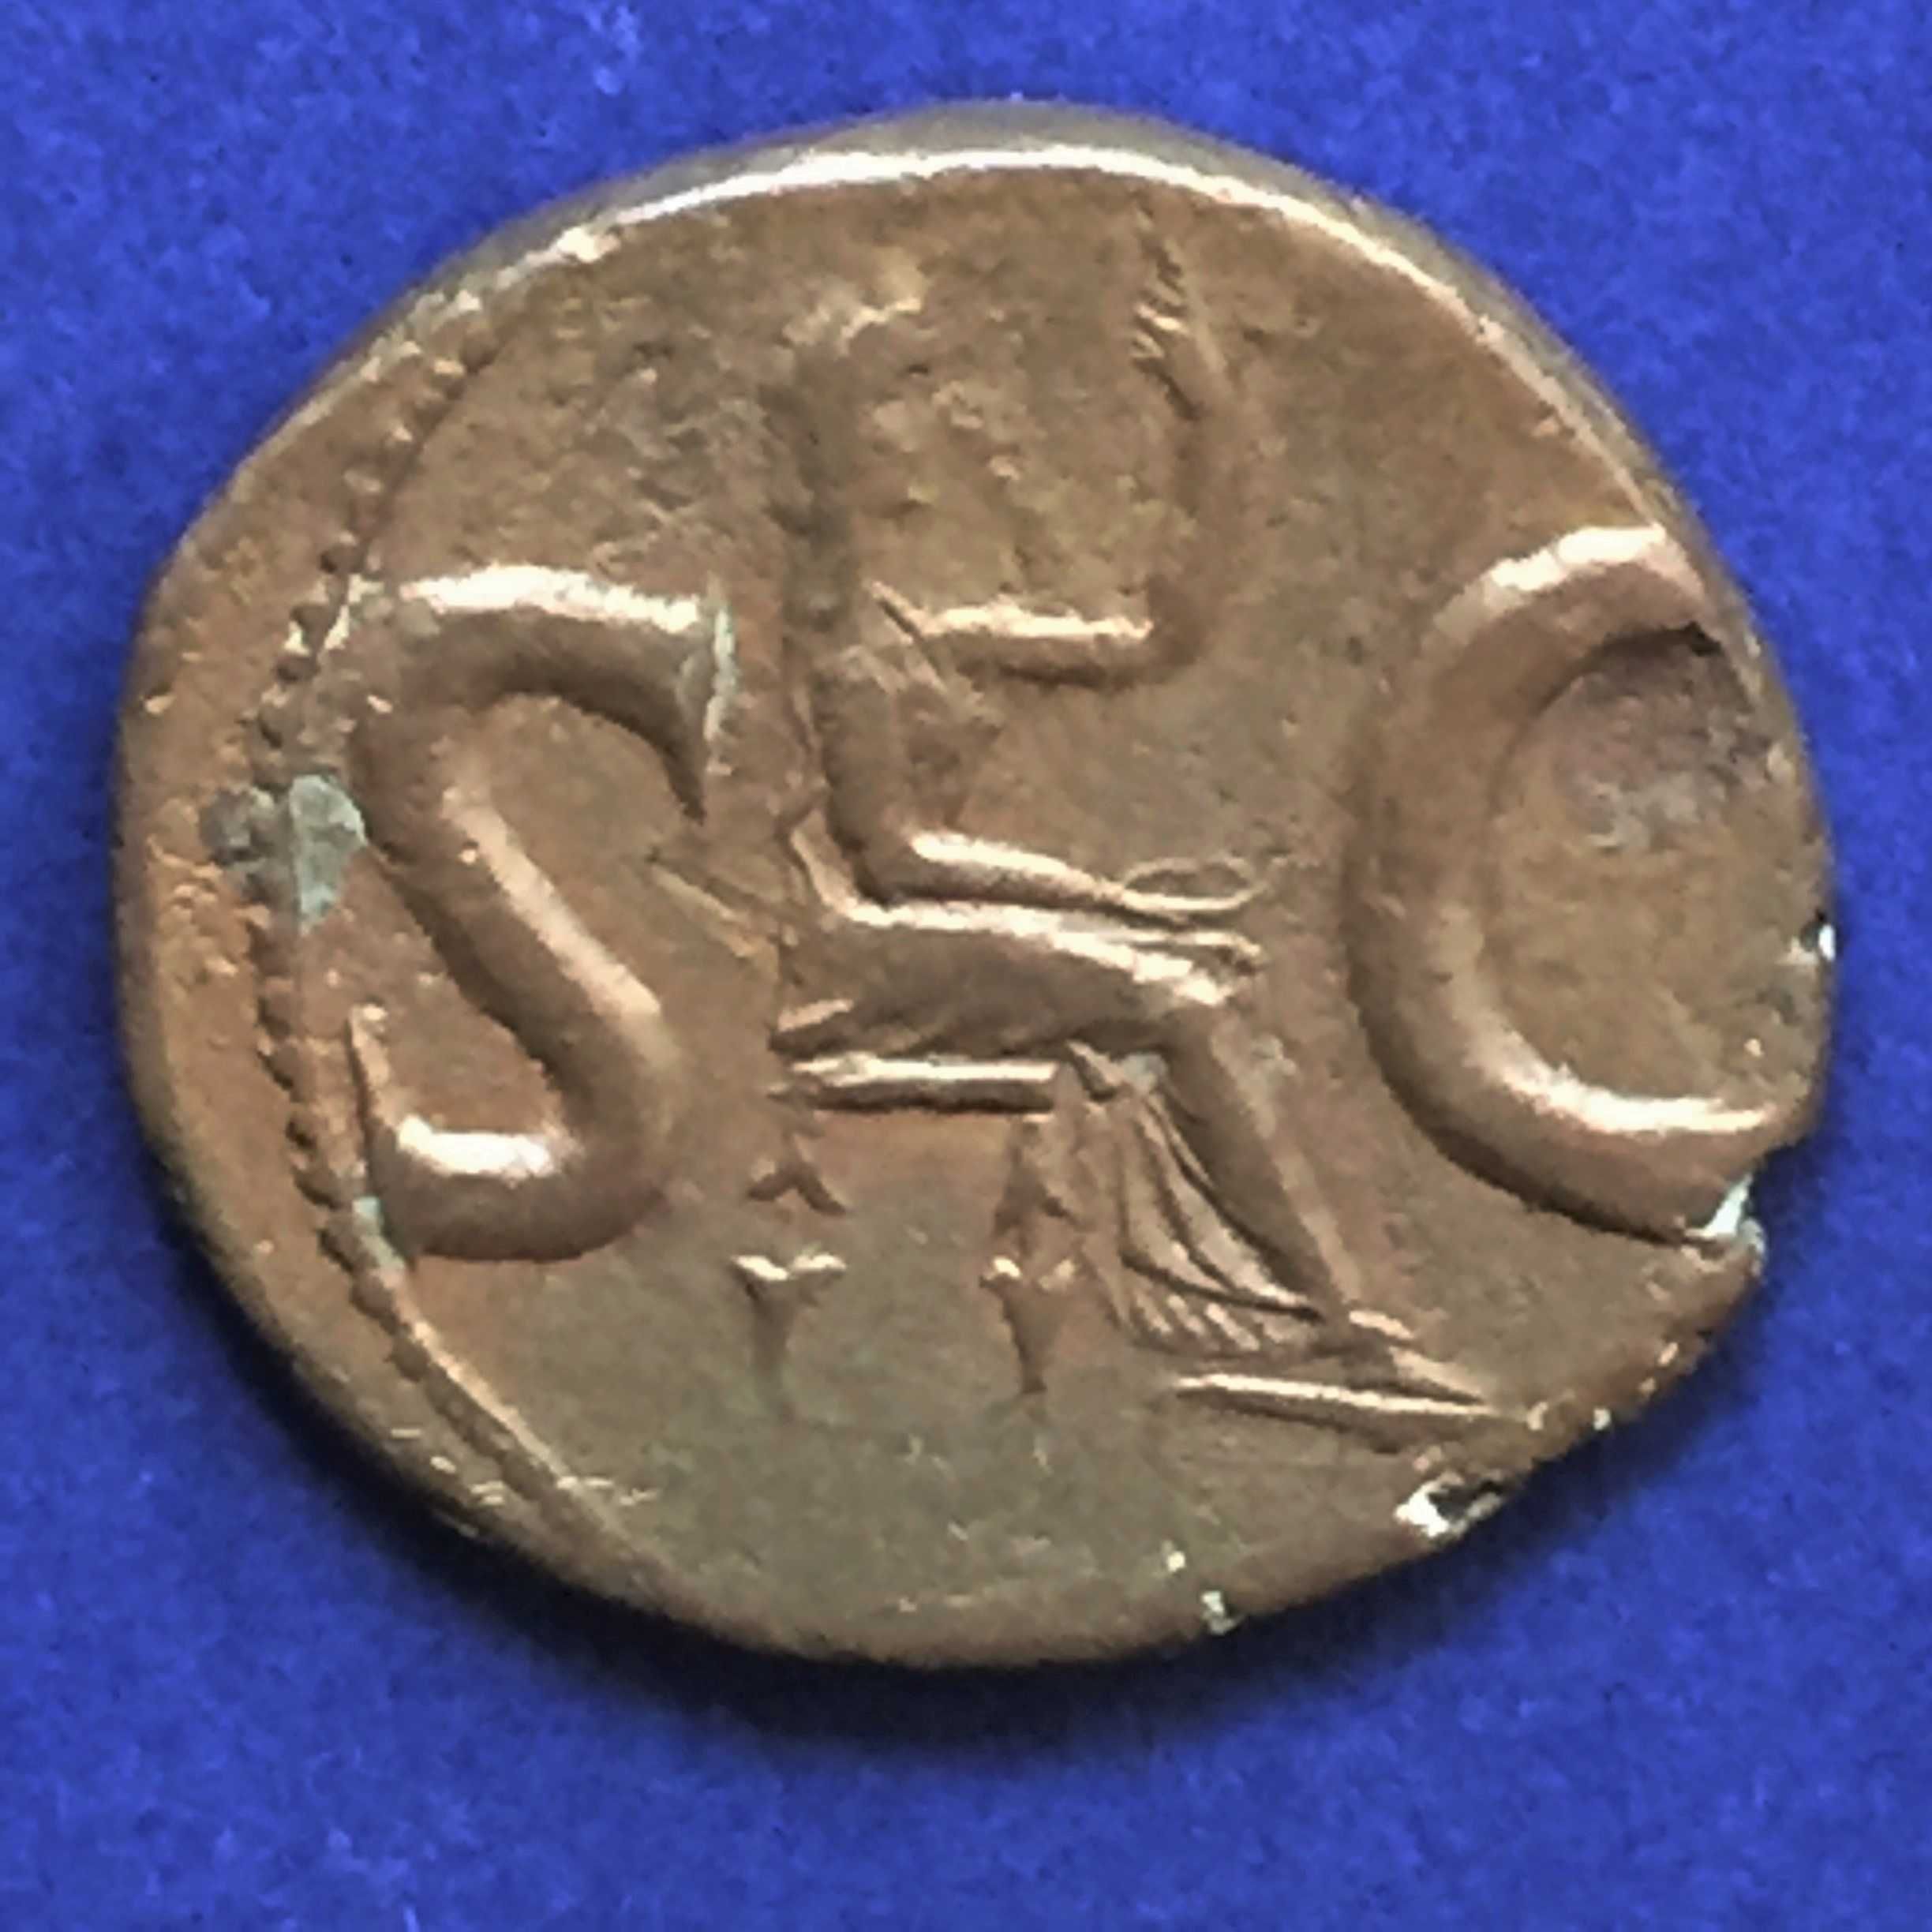 moeda romana AUGUSTO -Asse, Roma 15-16 D.C.,RIC 72-cobre-PORTES GRÁTIS